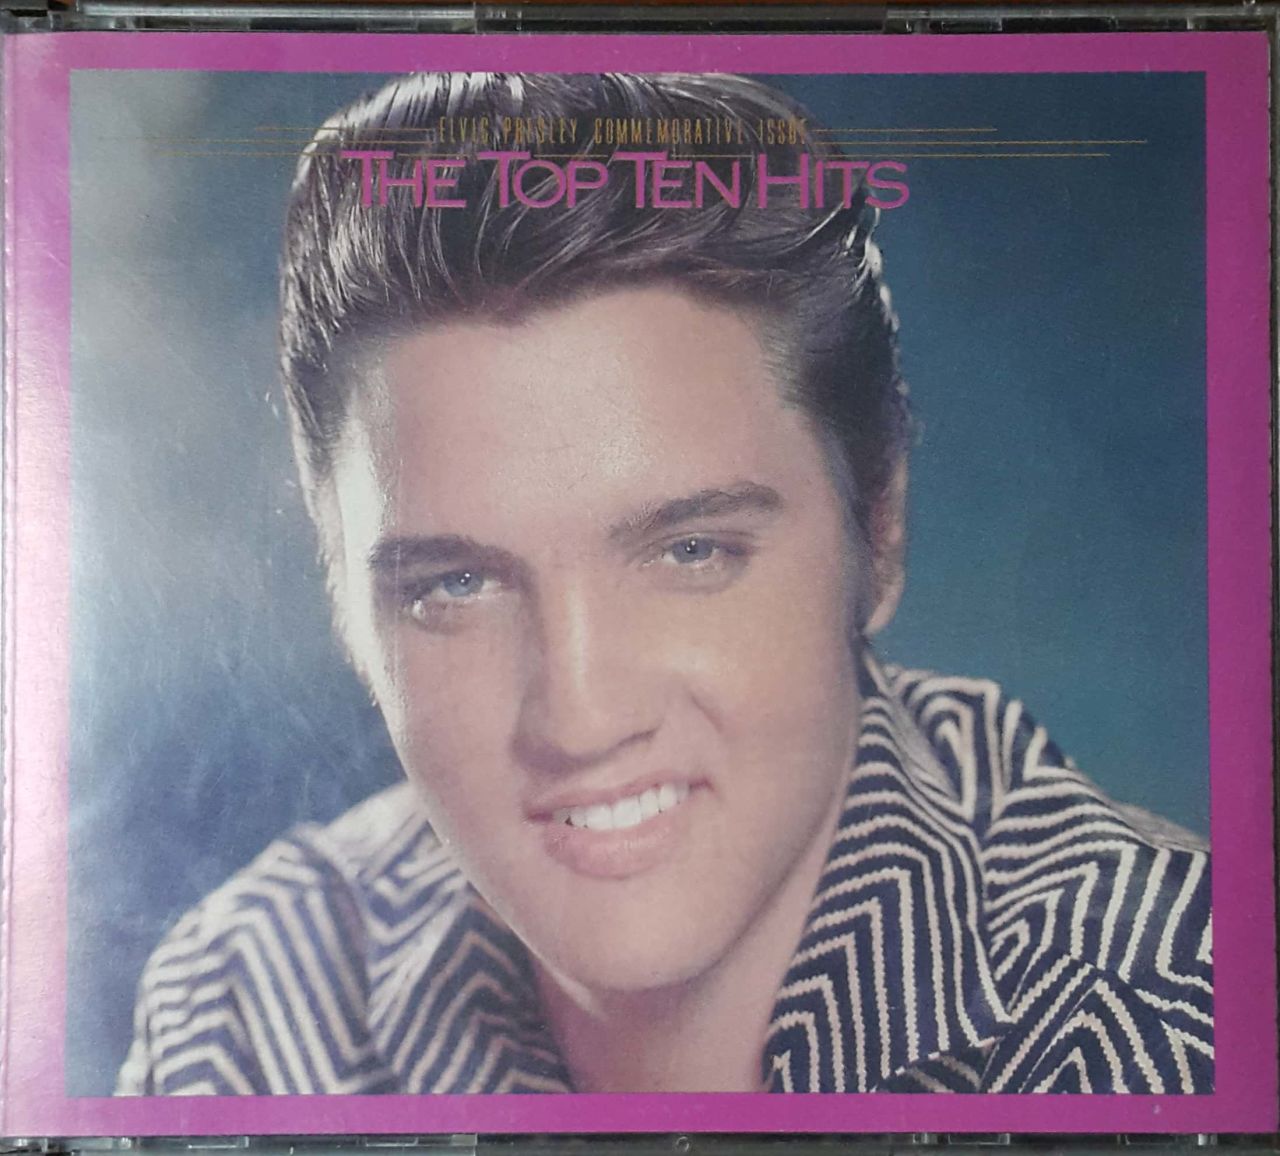 Elvis Pressley The Top Ten Hits CD